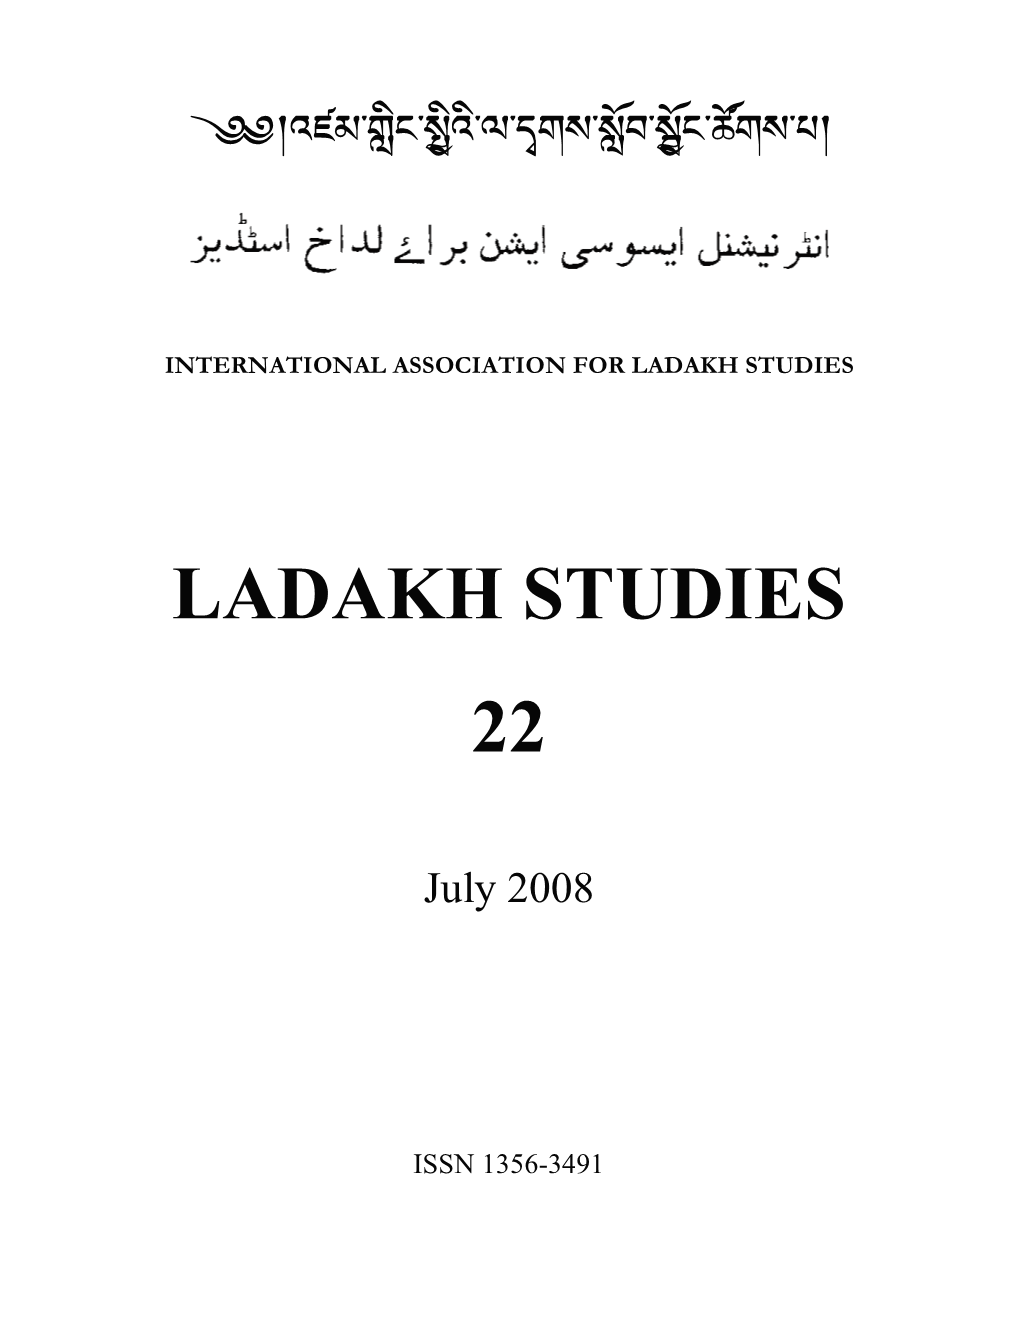 Ladakh Studies 22